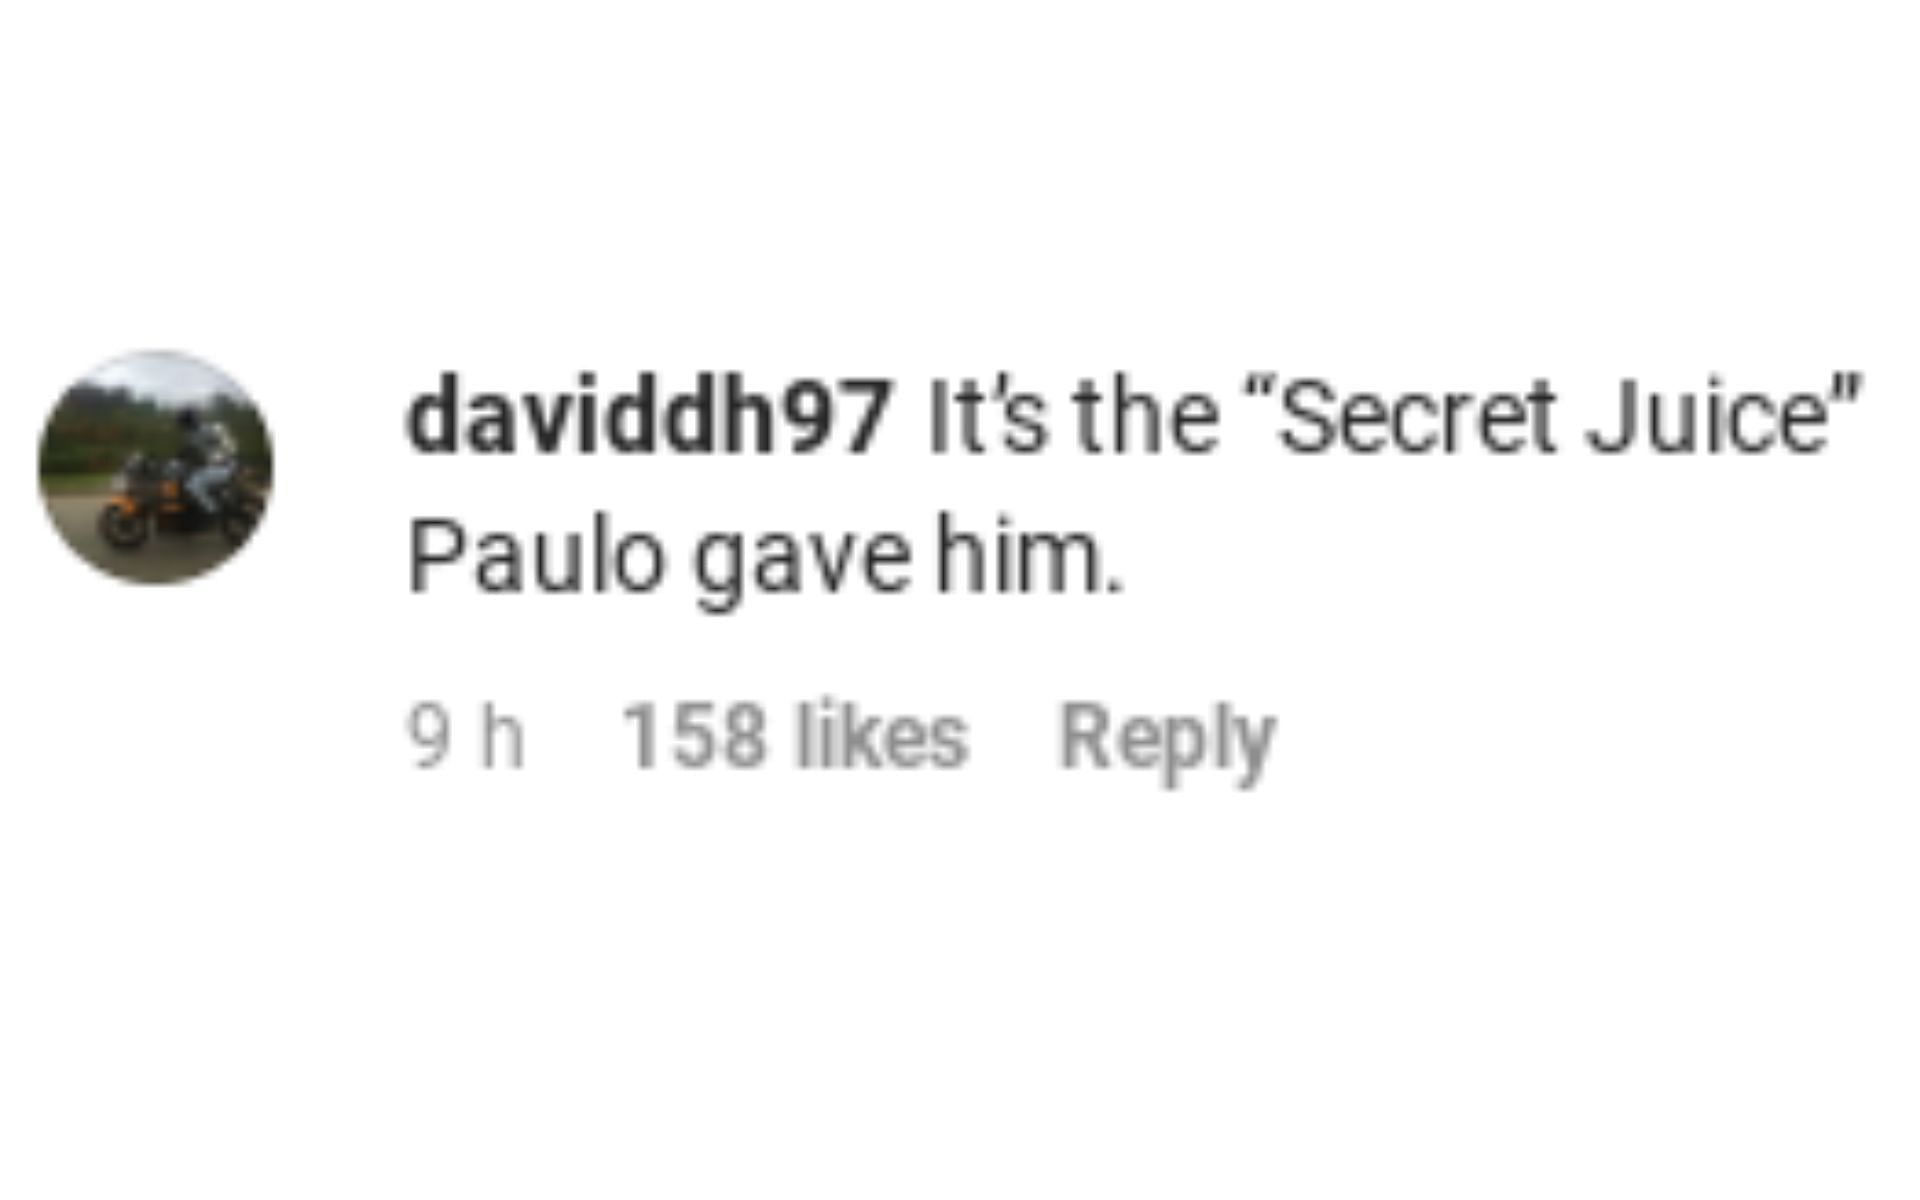 One fan referring to the secret juice